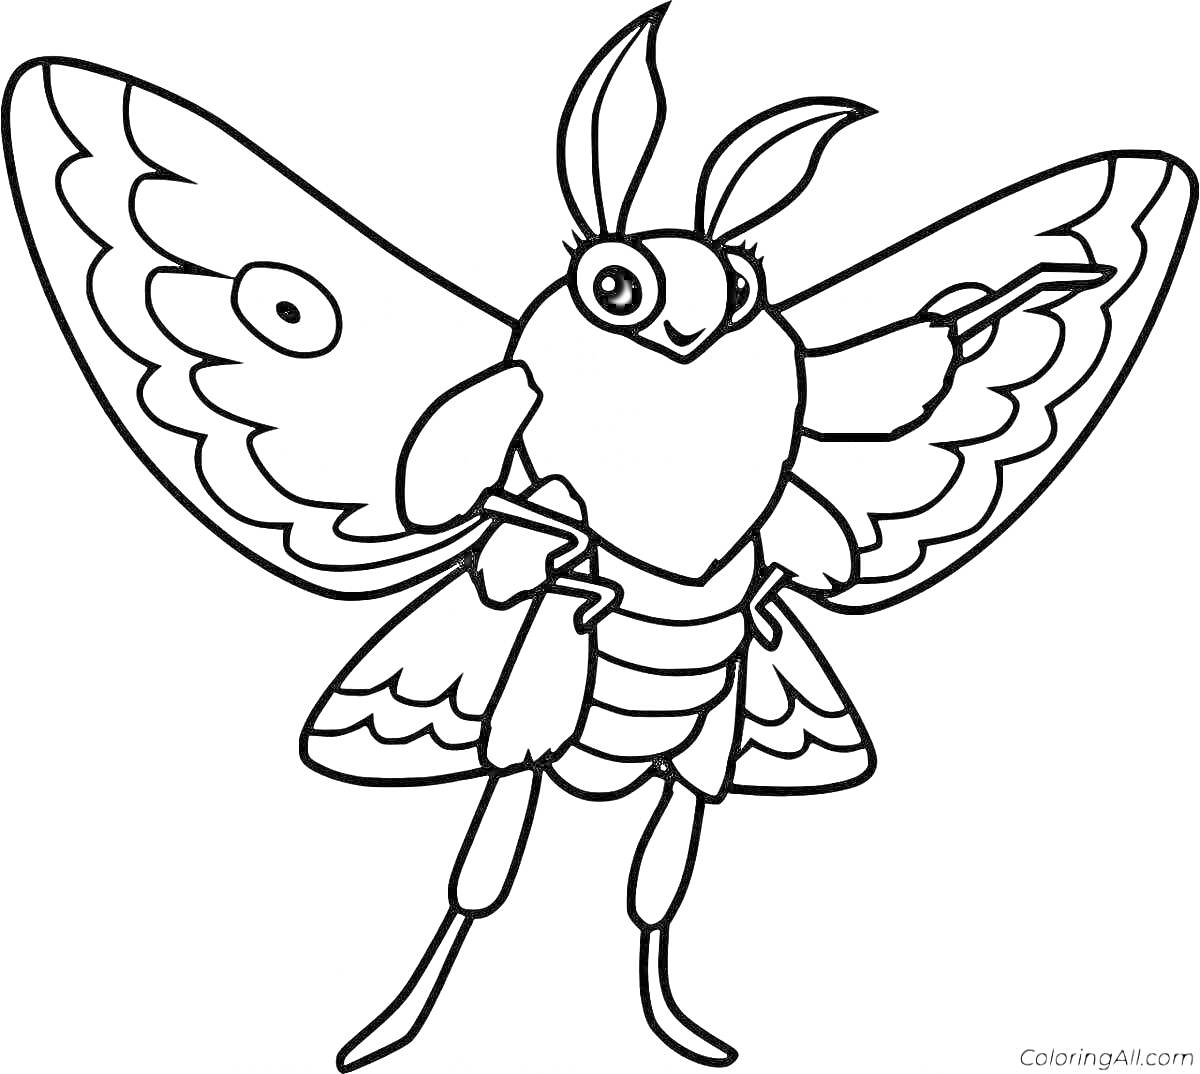 Раскраска Моль с большими крыльями и усиками, мультяшный стиль